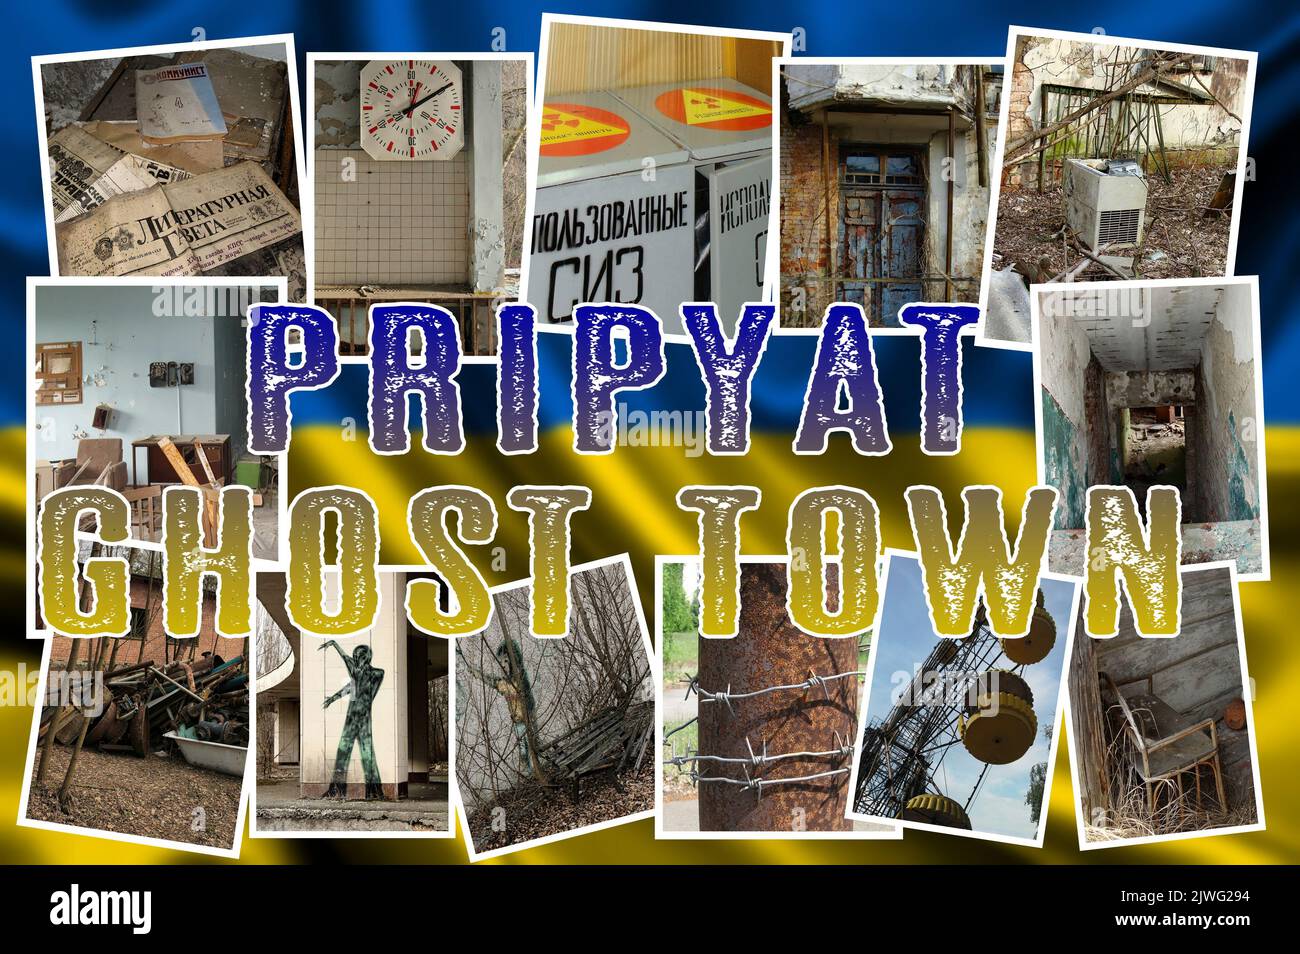 Die gruselige Stadt Pripyat (Ukrain), die für die Katastrophe von Tschernobyl bekannt ist, in ihrer Sperrzone, immer noch radioaktiv und gefährlich. (2) Stockfoto